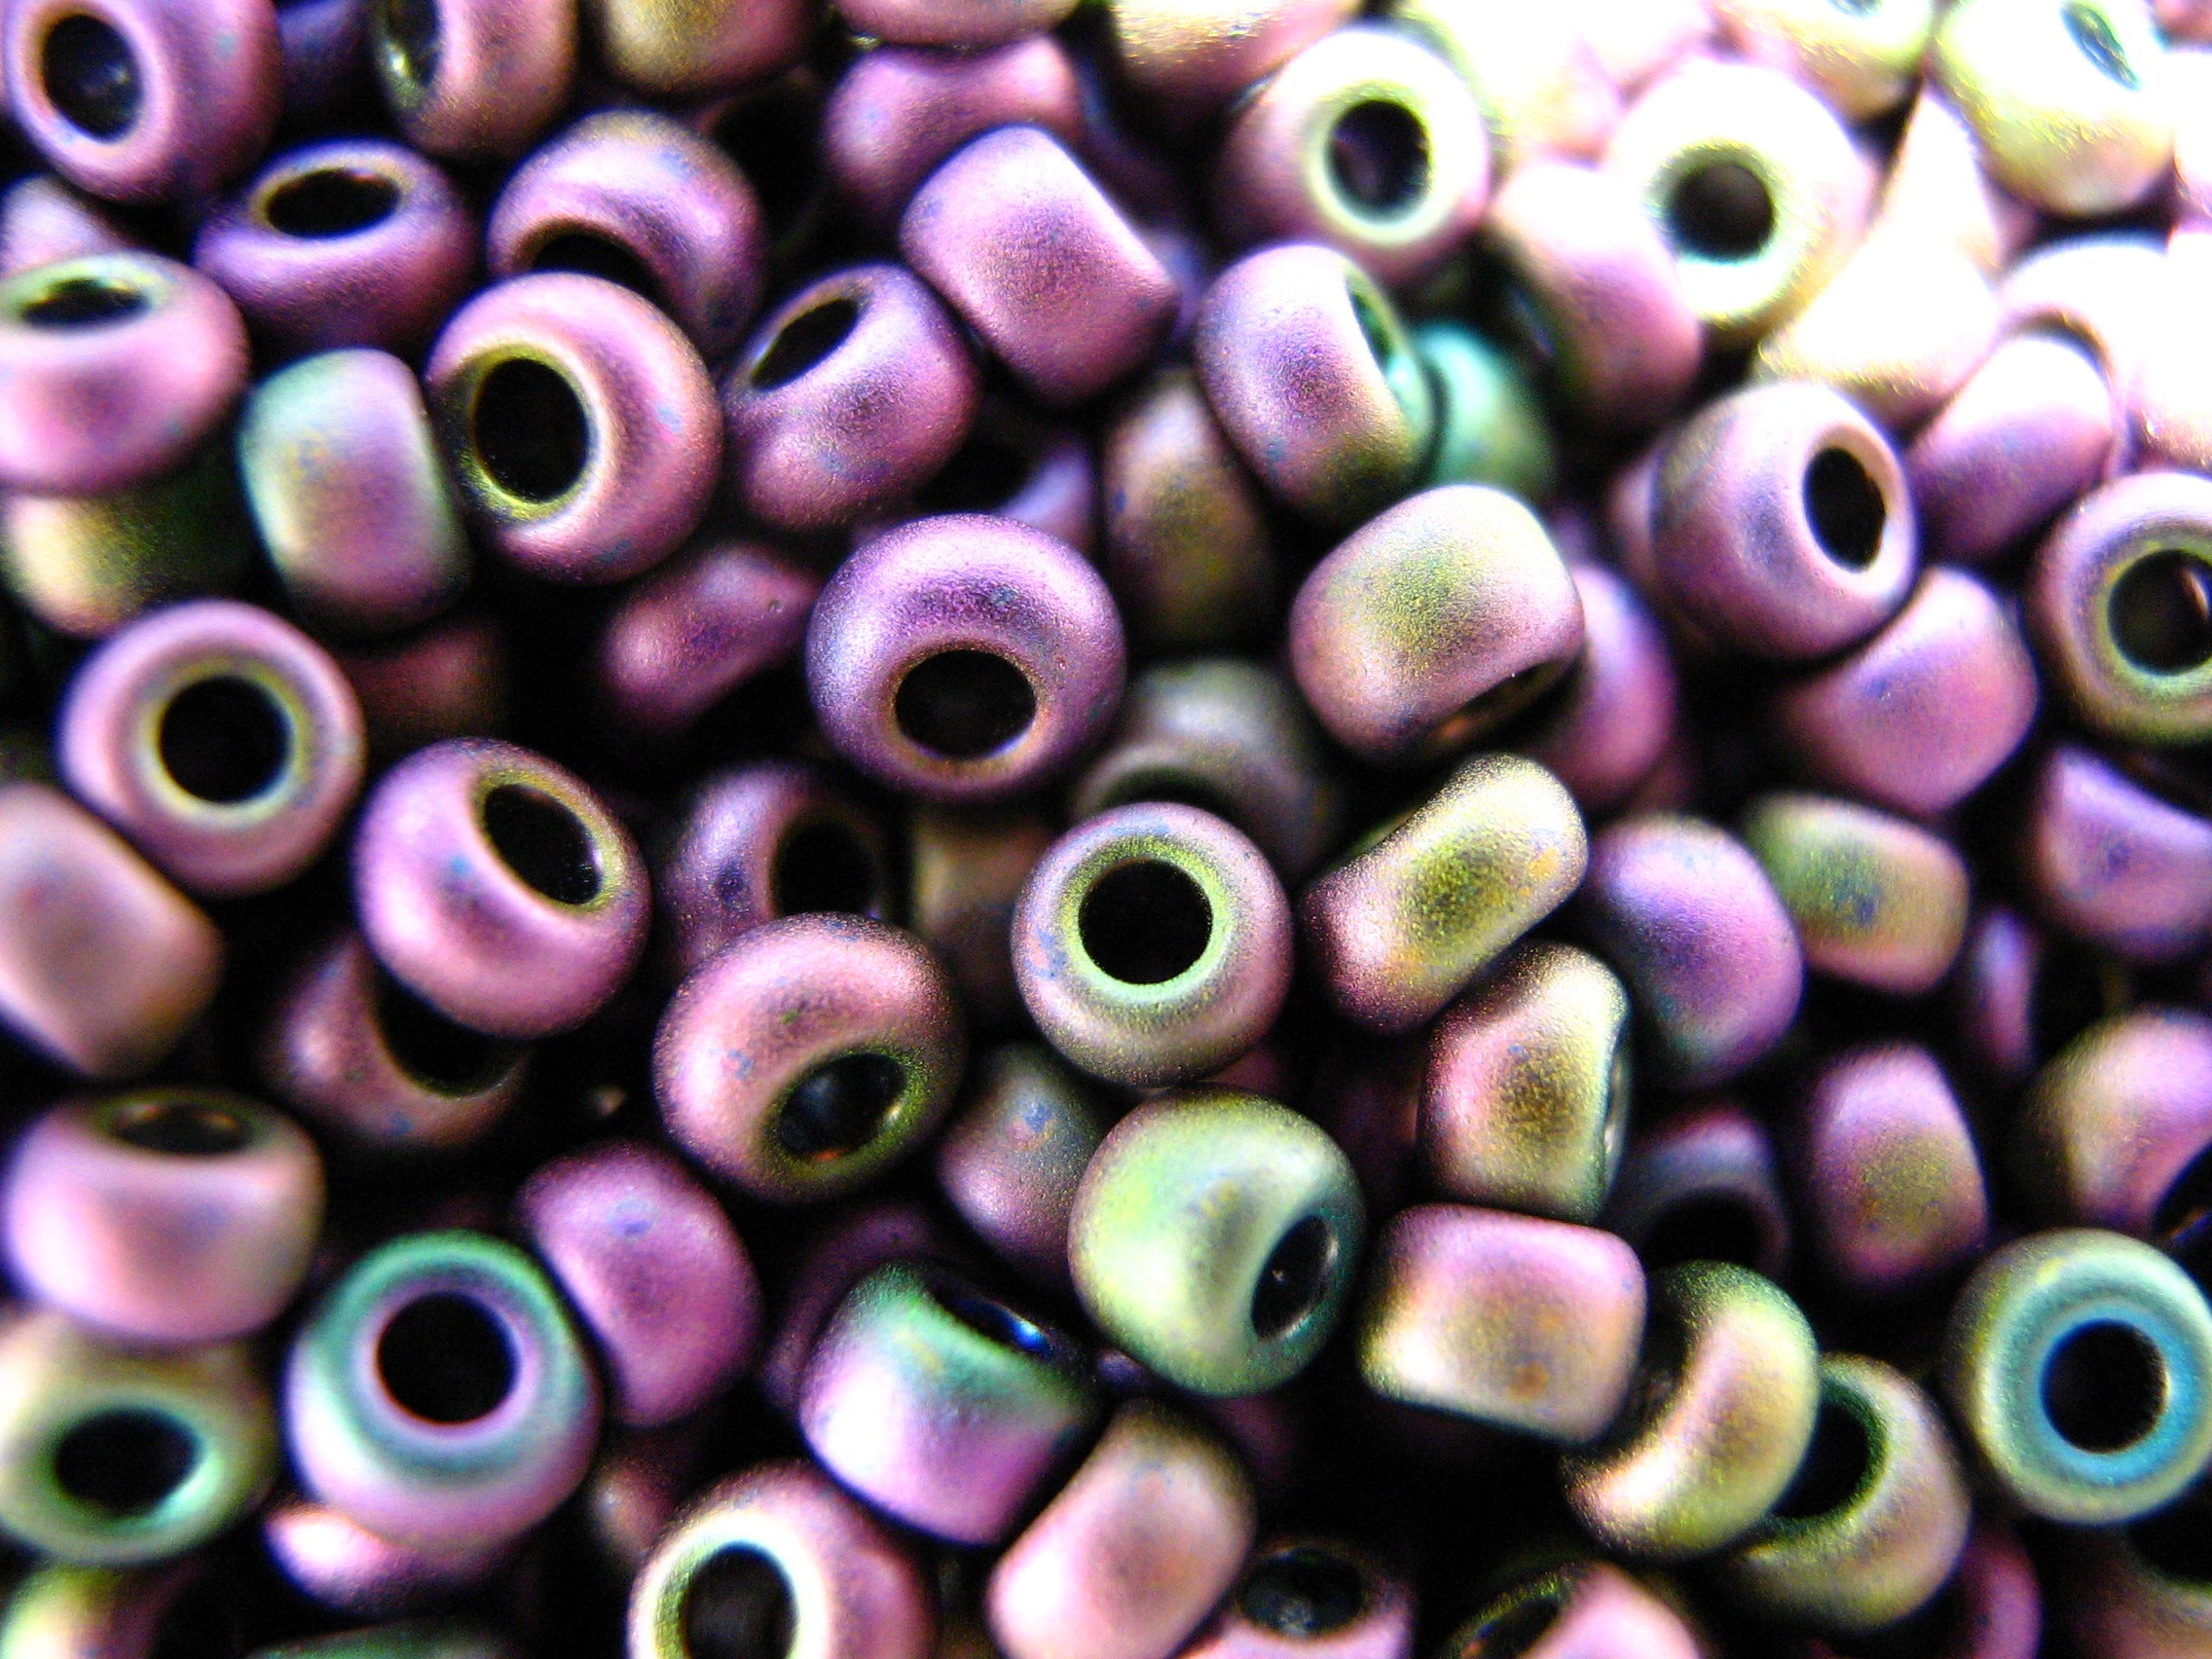 11/0 Round Toho Seed Beads, 16gms. Plumish/Metallic Matte.